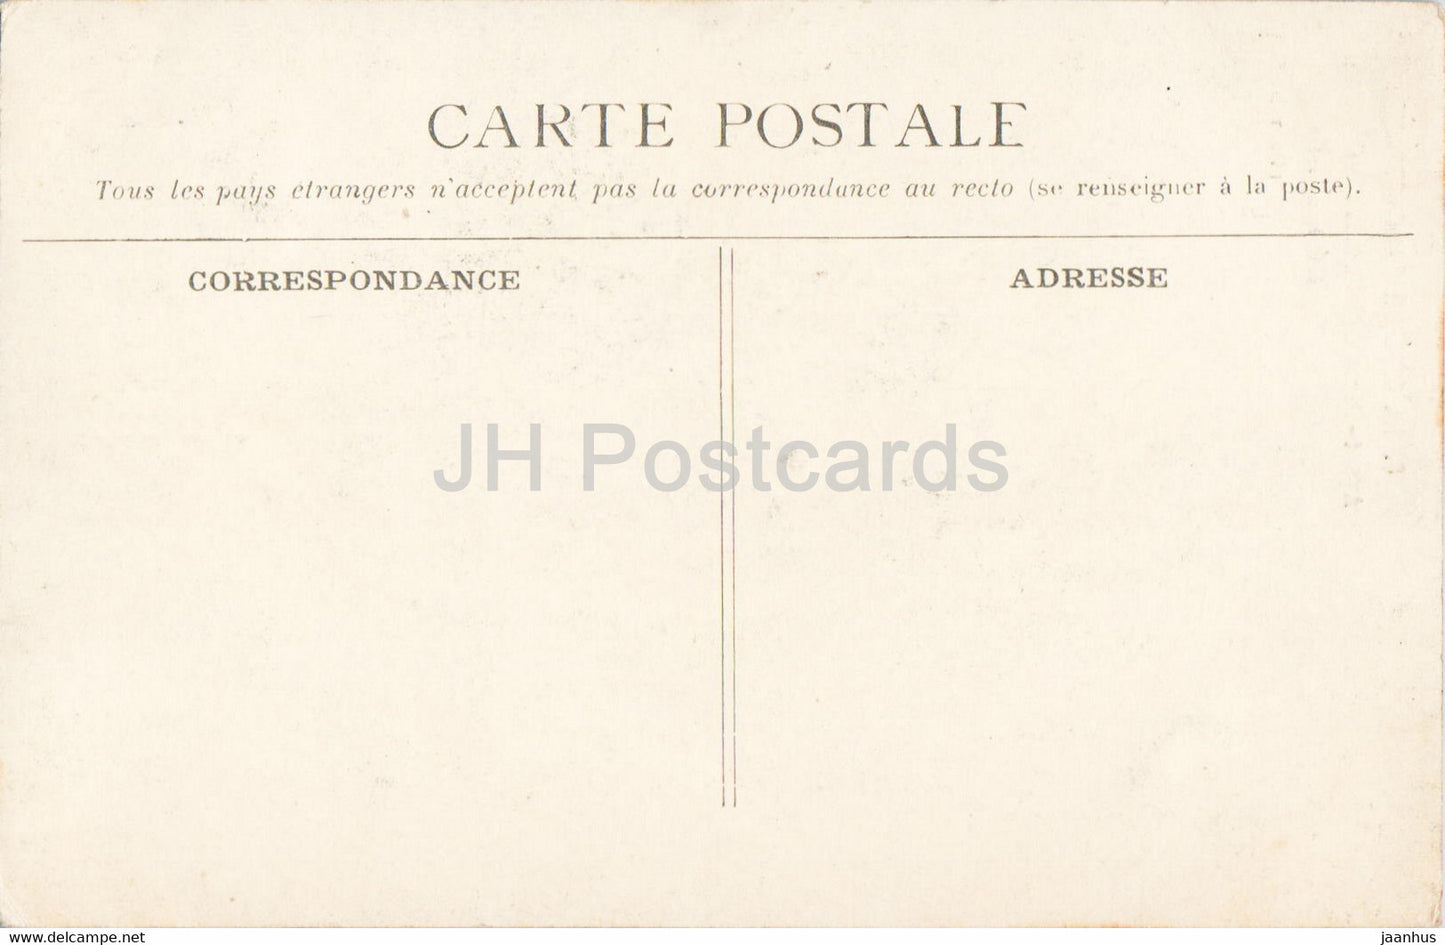 La Cite de Carcassonne - Avant Porte et Defenses du Chateau - 8 - castle - old postcard - France - unused